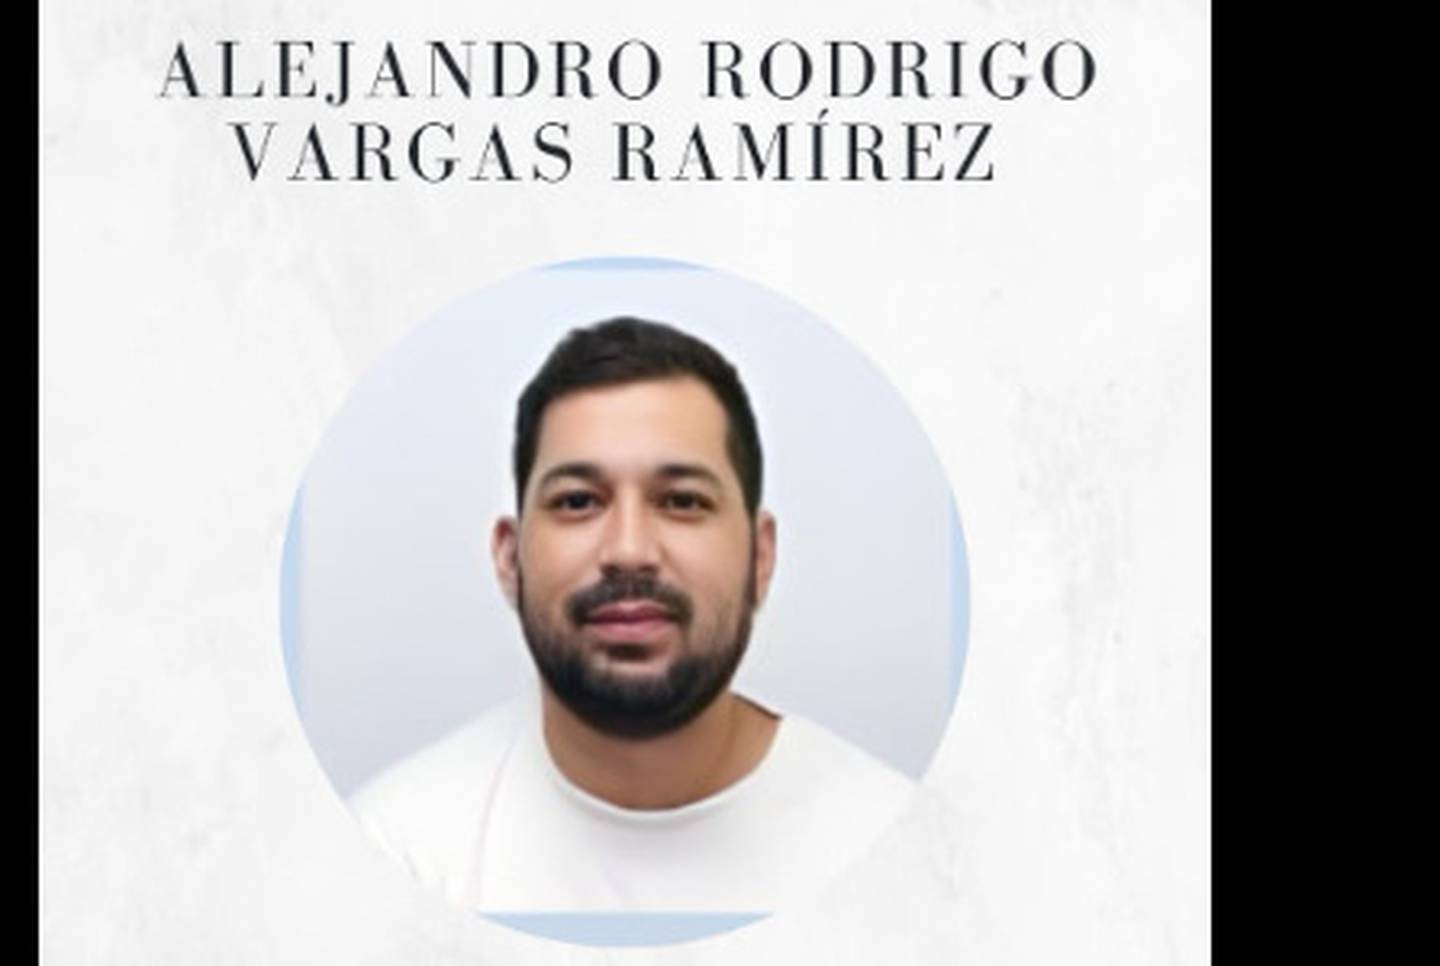 El policía asesinado a balazos la noche de este miércoles 8 de mayo en Quepos tenía 35 años. 
El oficial fue identificado como Alejandro Rodrigo Vargas Ramírez quien era padre de una hija de 13 años según el Tribunal Supremo de Elecciones (TSE).